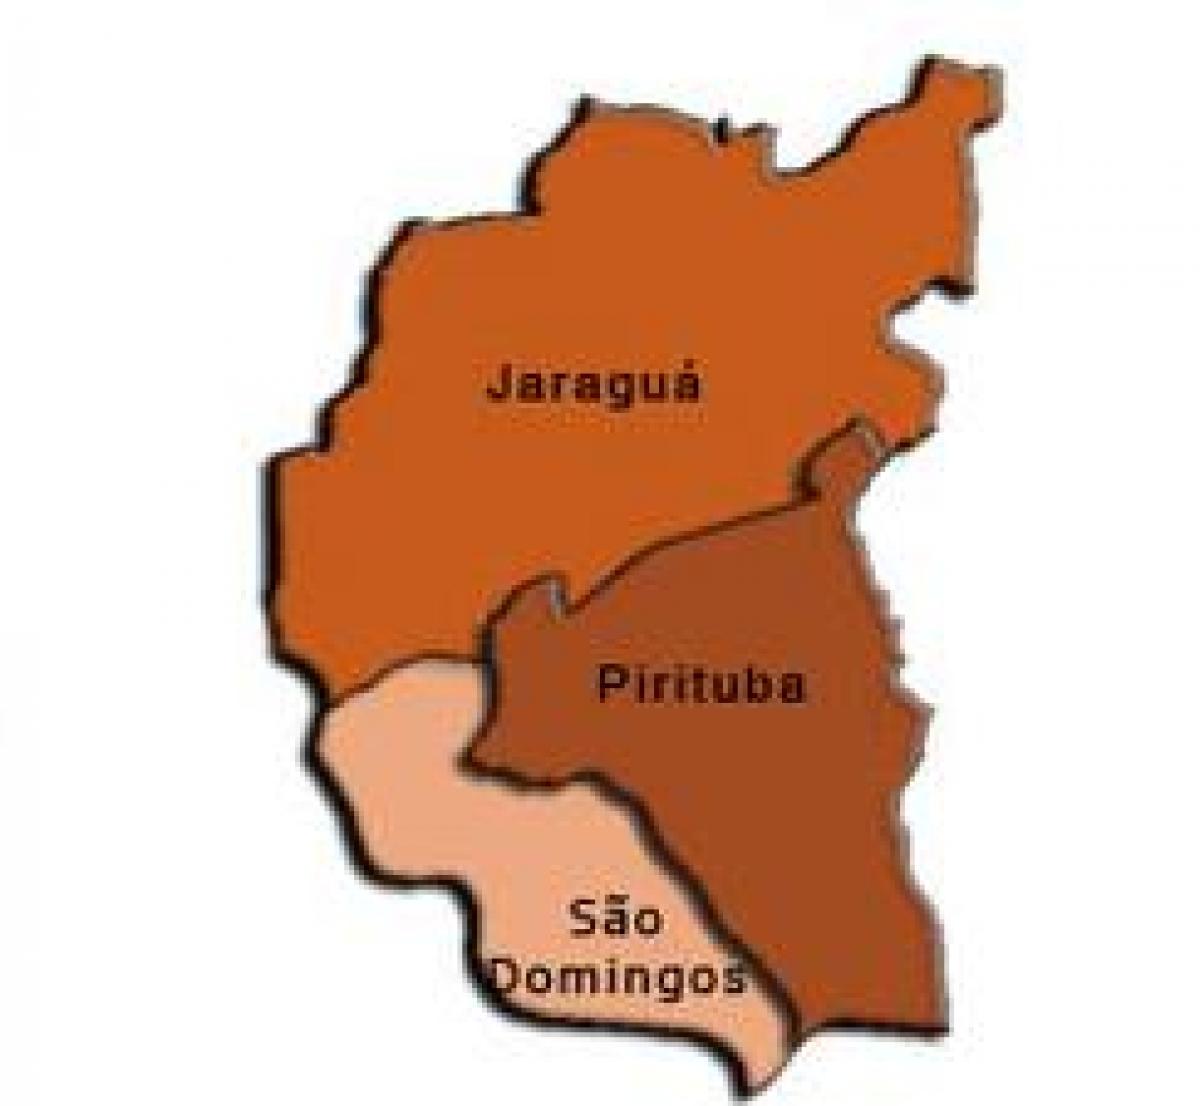 মানচিত্র Pirituba-Jaraguá উপ-প্রিফেকচার